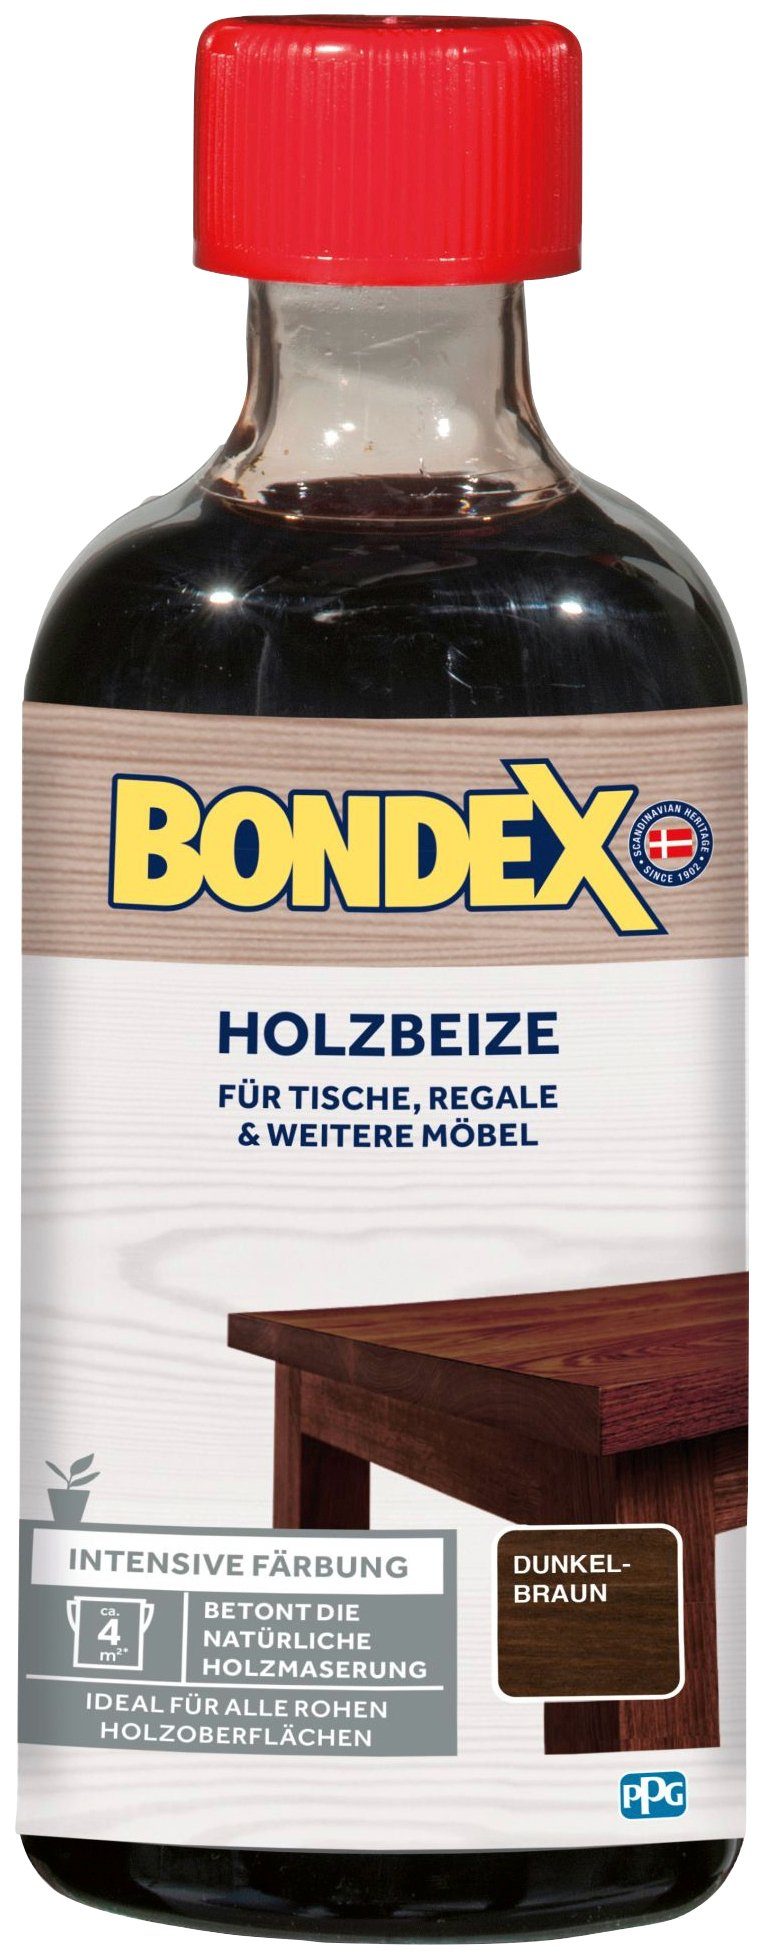 Bondex Lasur HOLZBEIZE, für l weitere Möbel, dunkelbraun & 0,25 Färbung, intensive Regale Tische